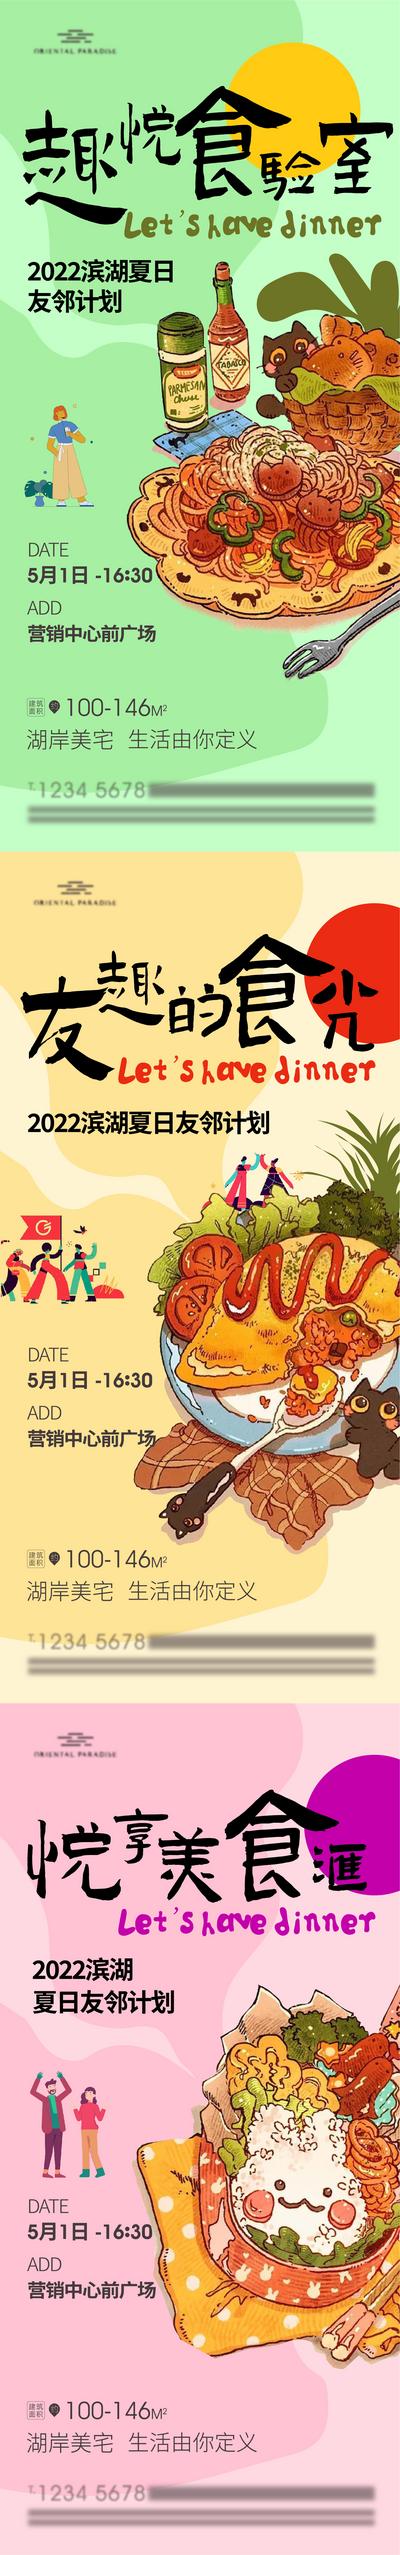 南门网 海报 房地产 美食节 狂欢节 烧烤 活动 插画 国潮 系列